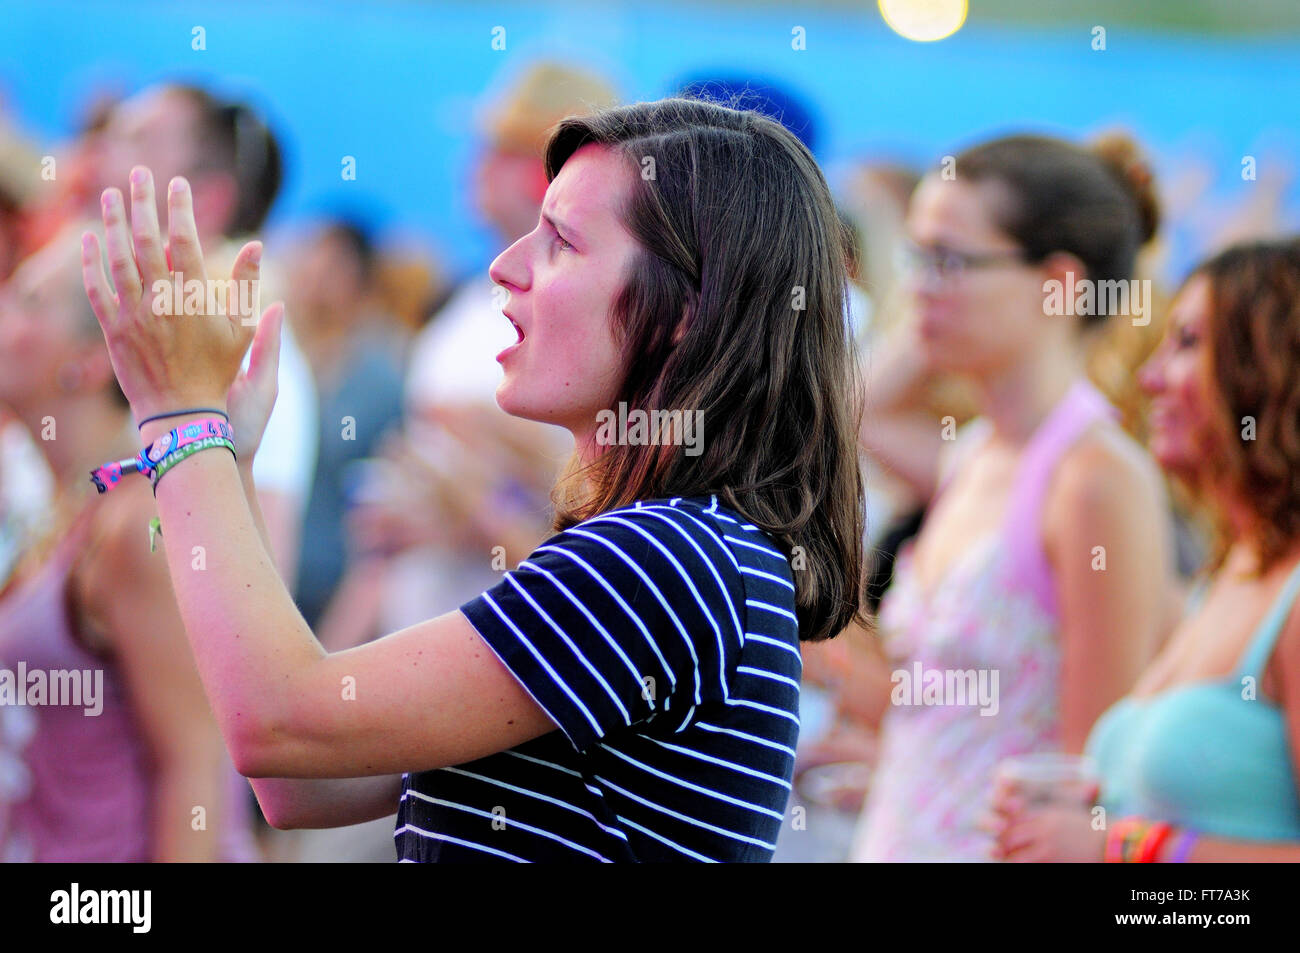 BENICASSIM, Spanien - Juli 19: Eine Frau aus der Menge Beifall beim FIB (Festival Internacional de Benicassim) 2013 Festival. Stockfoto